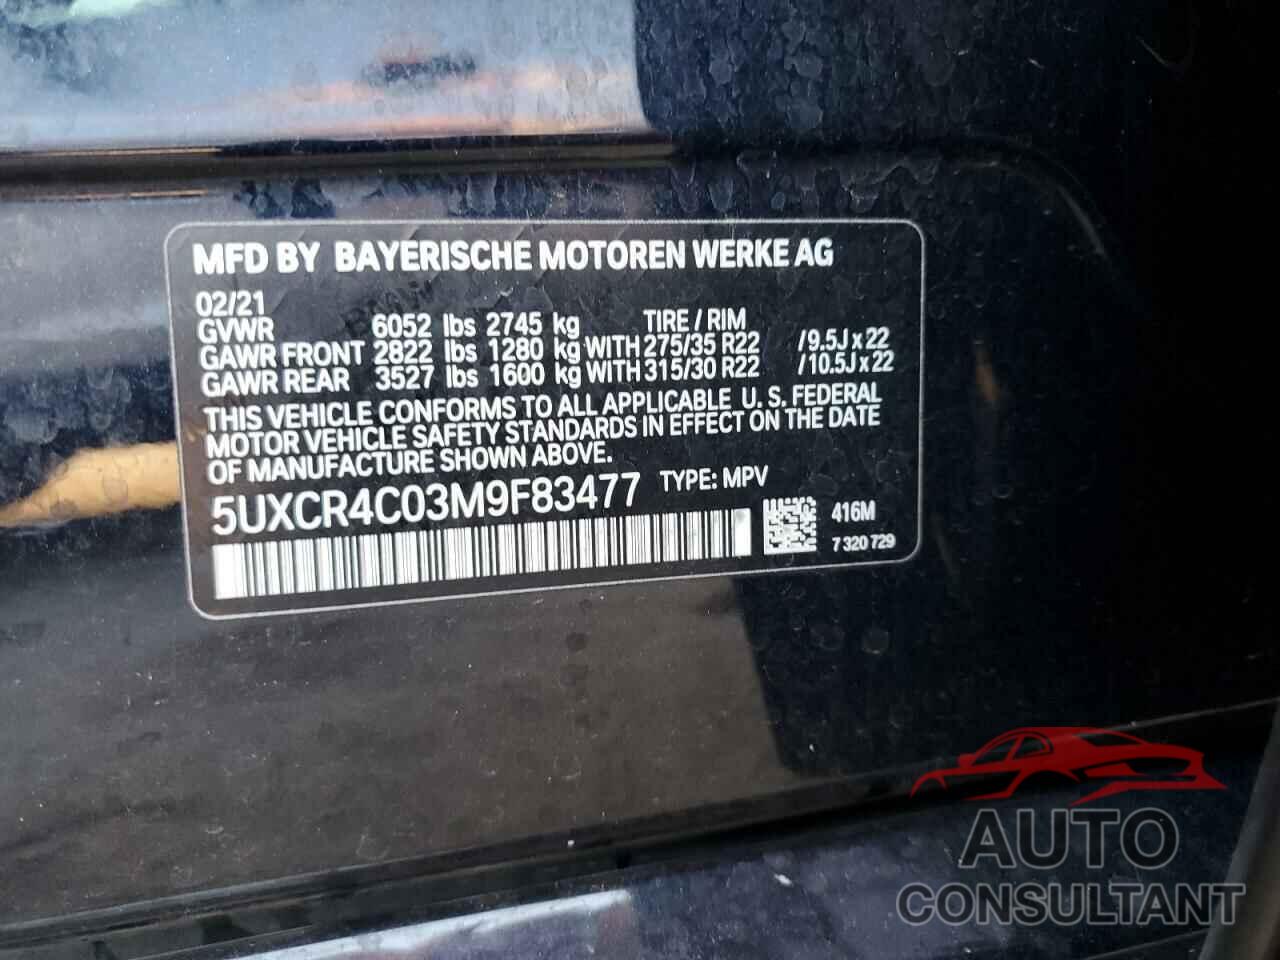 BMW X5 2021 - 5UXCR4C03M9F83477